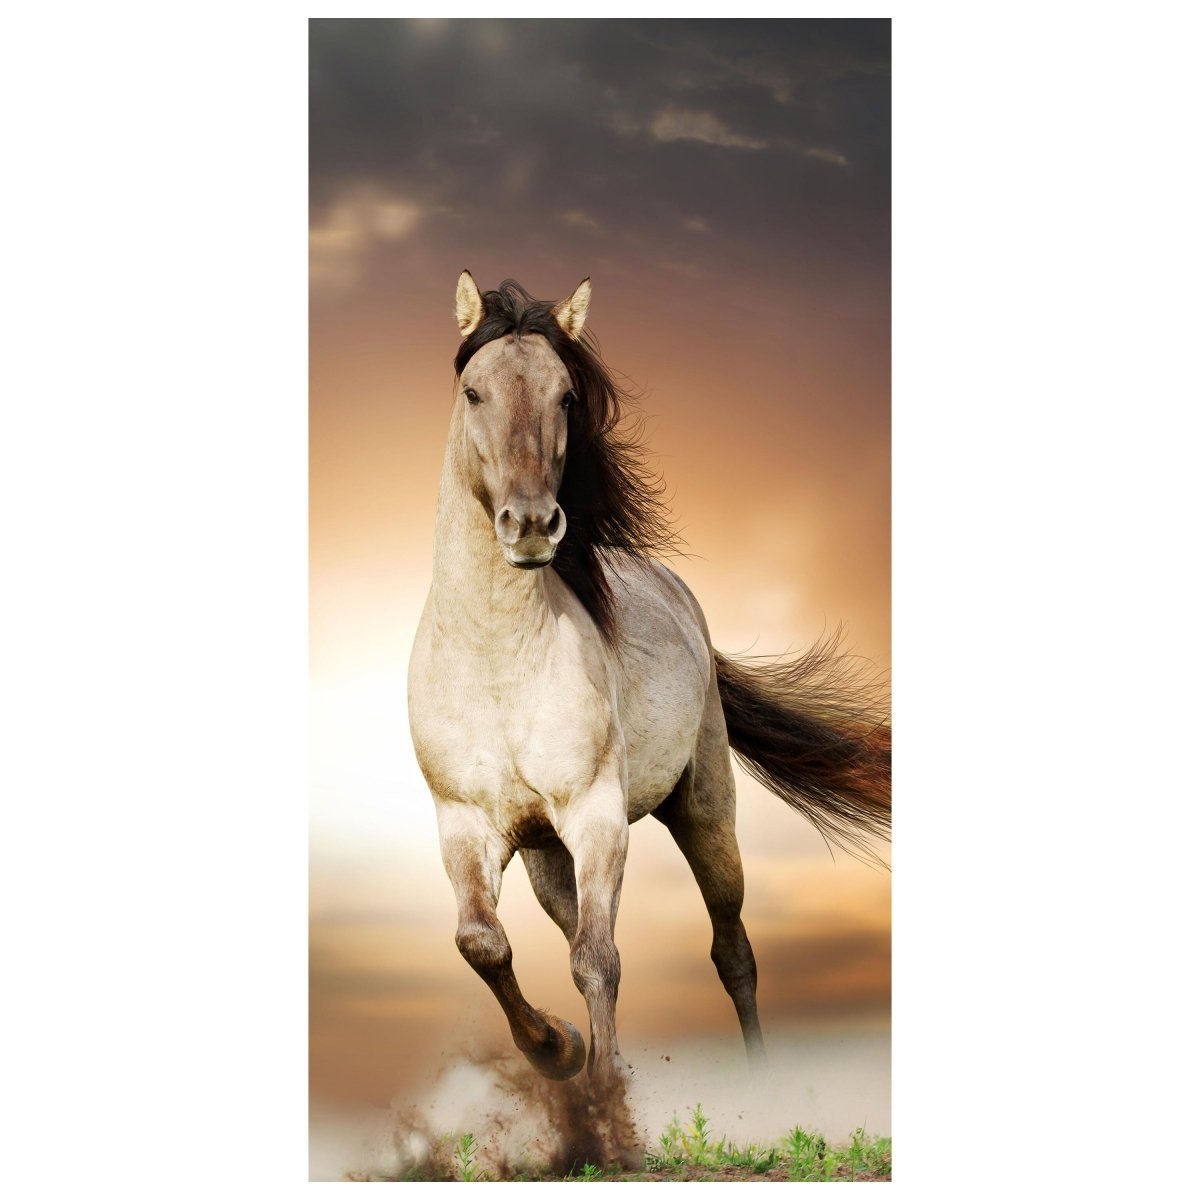 Türtapete Pferd rennt über Wiese, Schimmel, Weiß M1158 - Bild 2